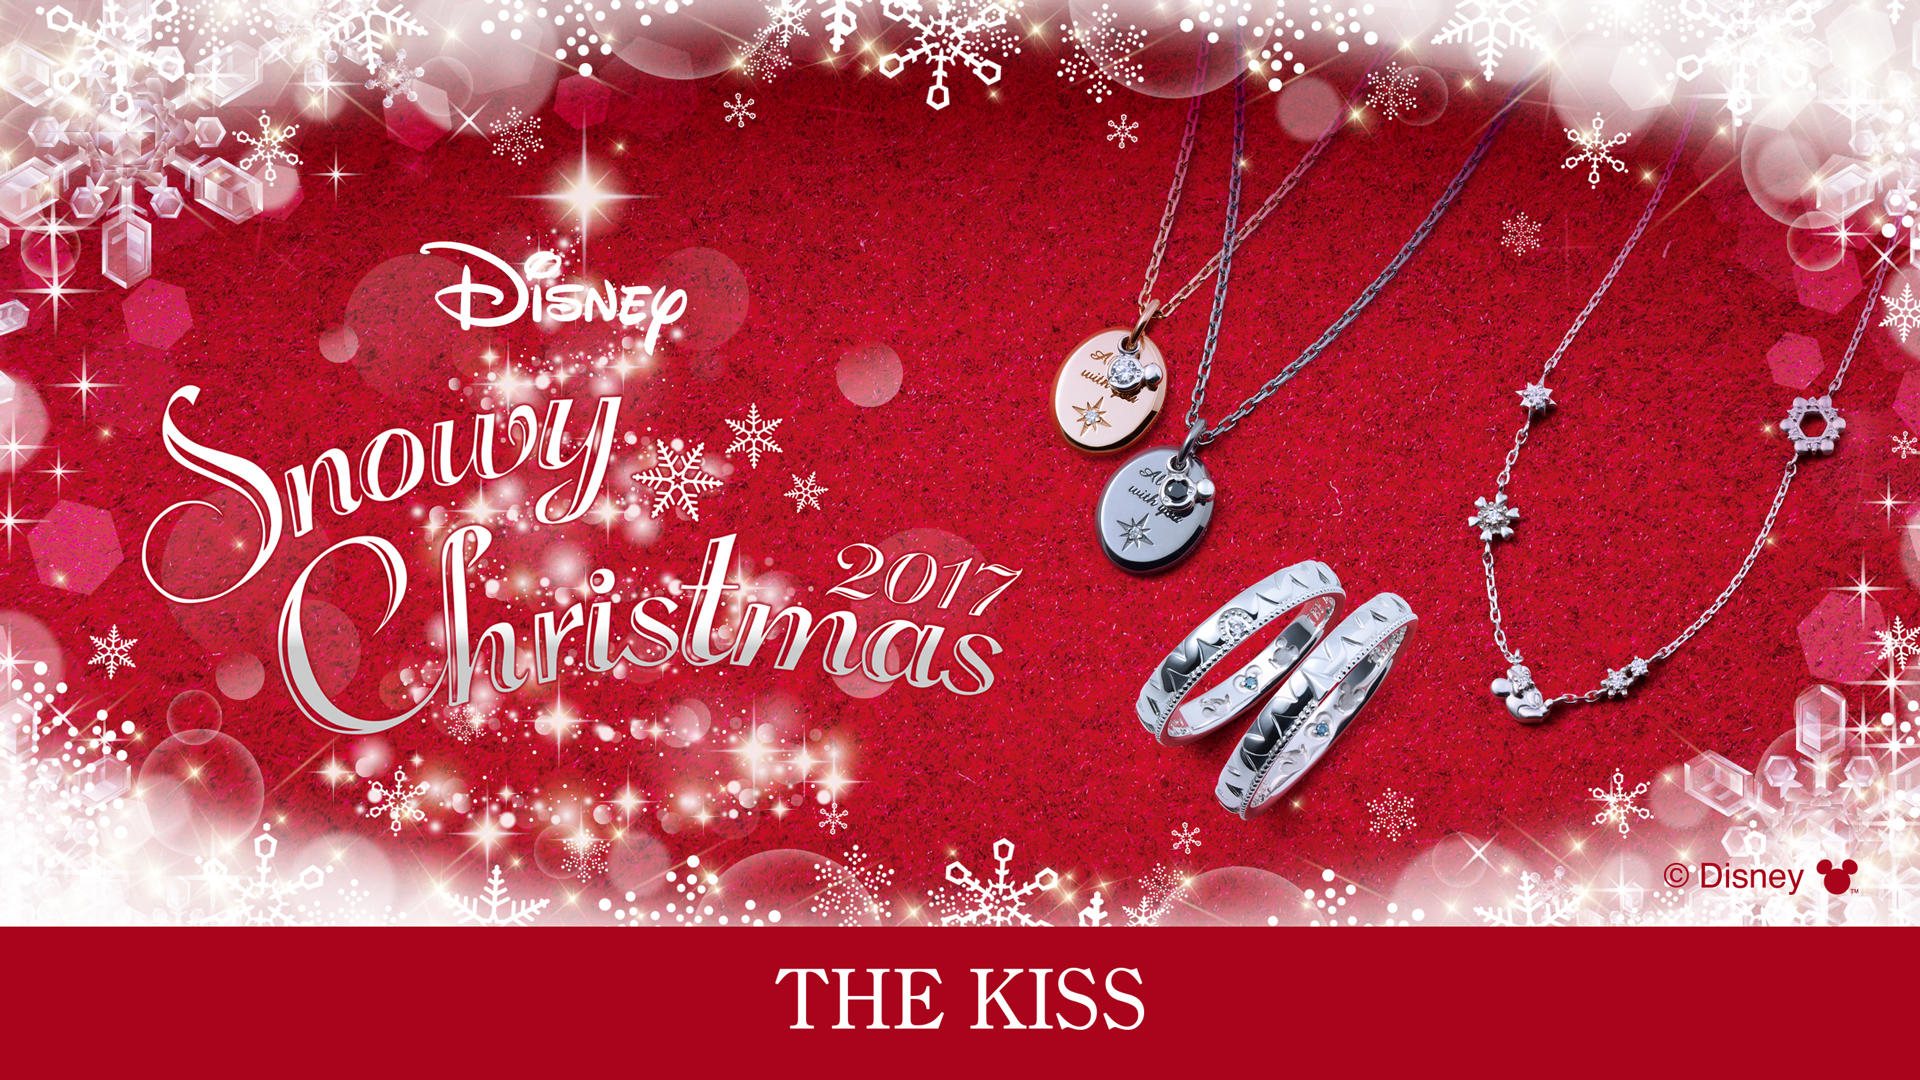 17年 The Kiss ディズニーコレクション クリスマス限定商品発売 The Kiss ザ キッス